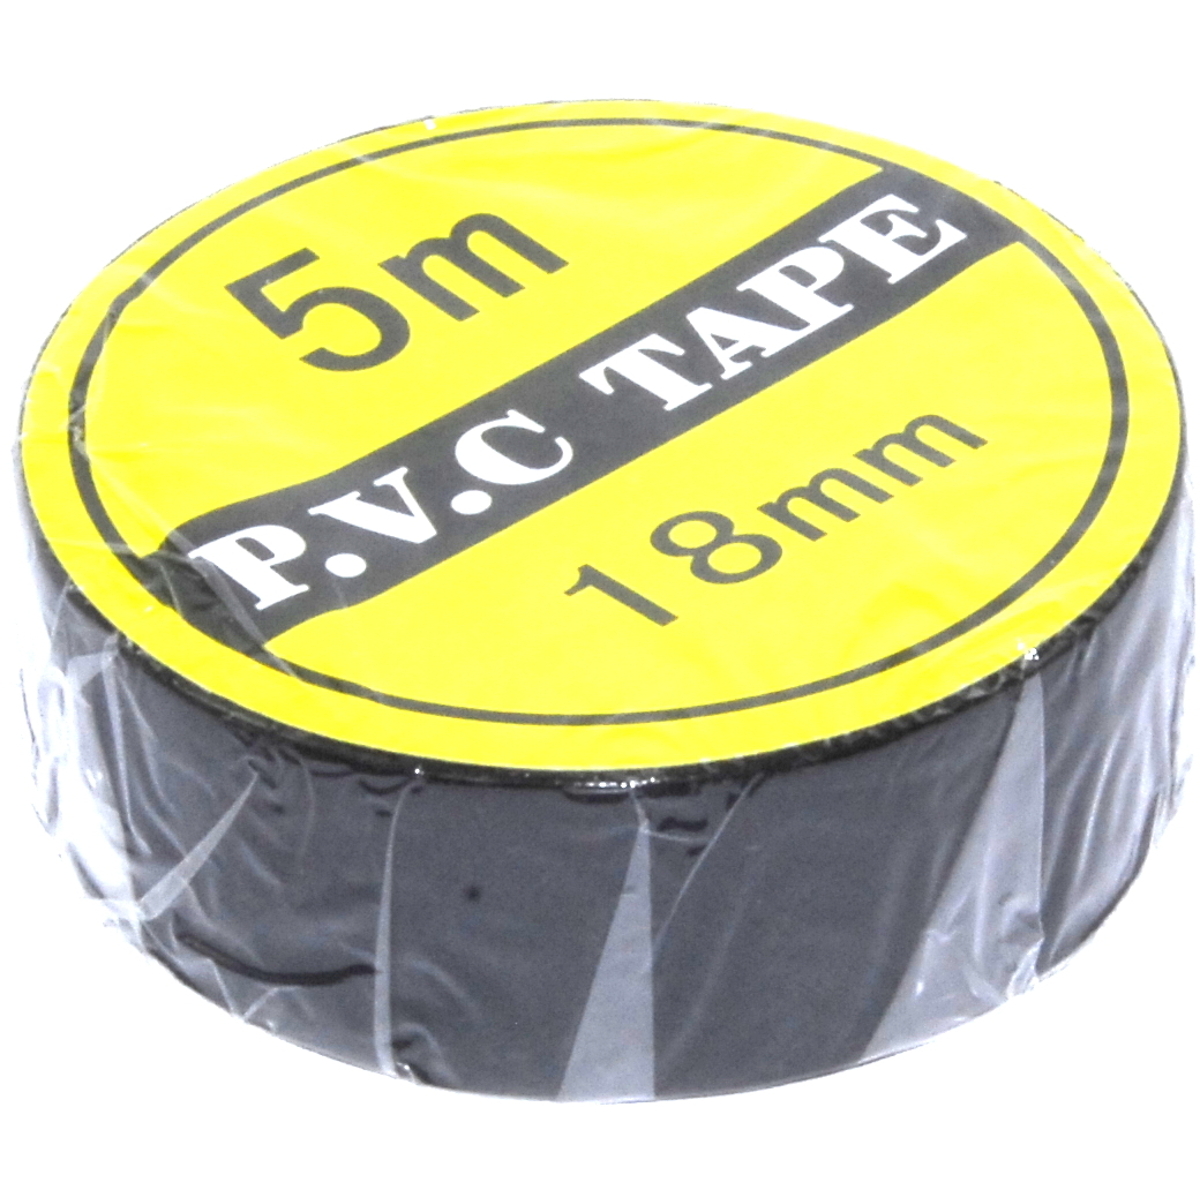 PVC insulating Tape 10pkg Steren 400-905